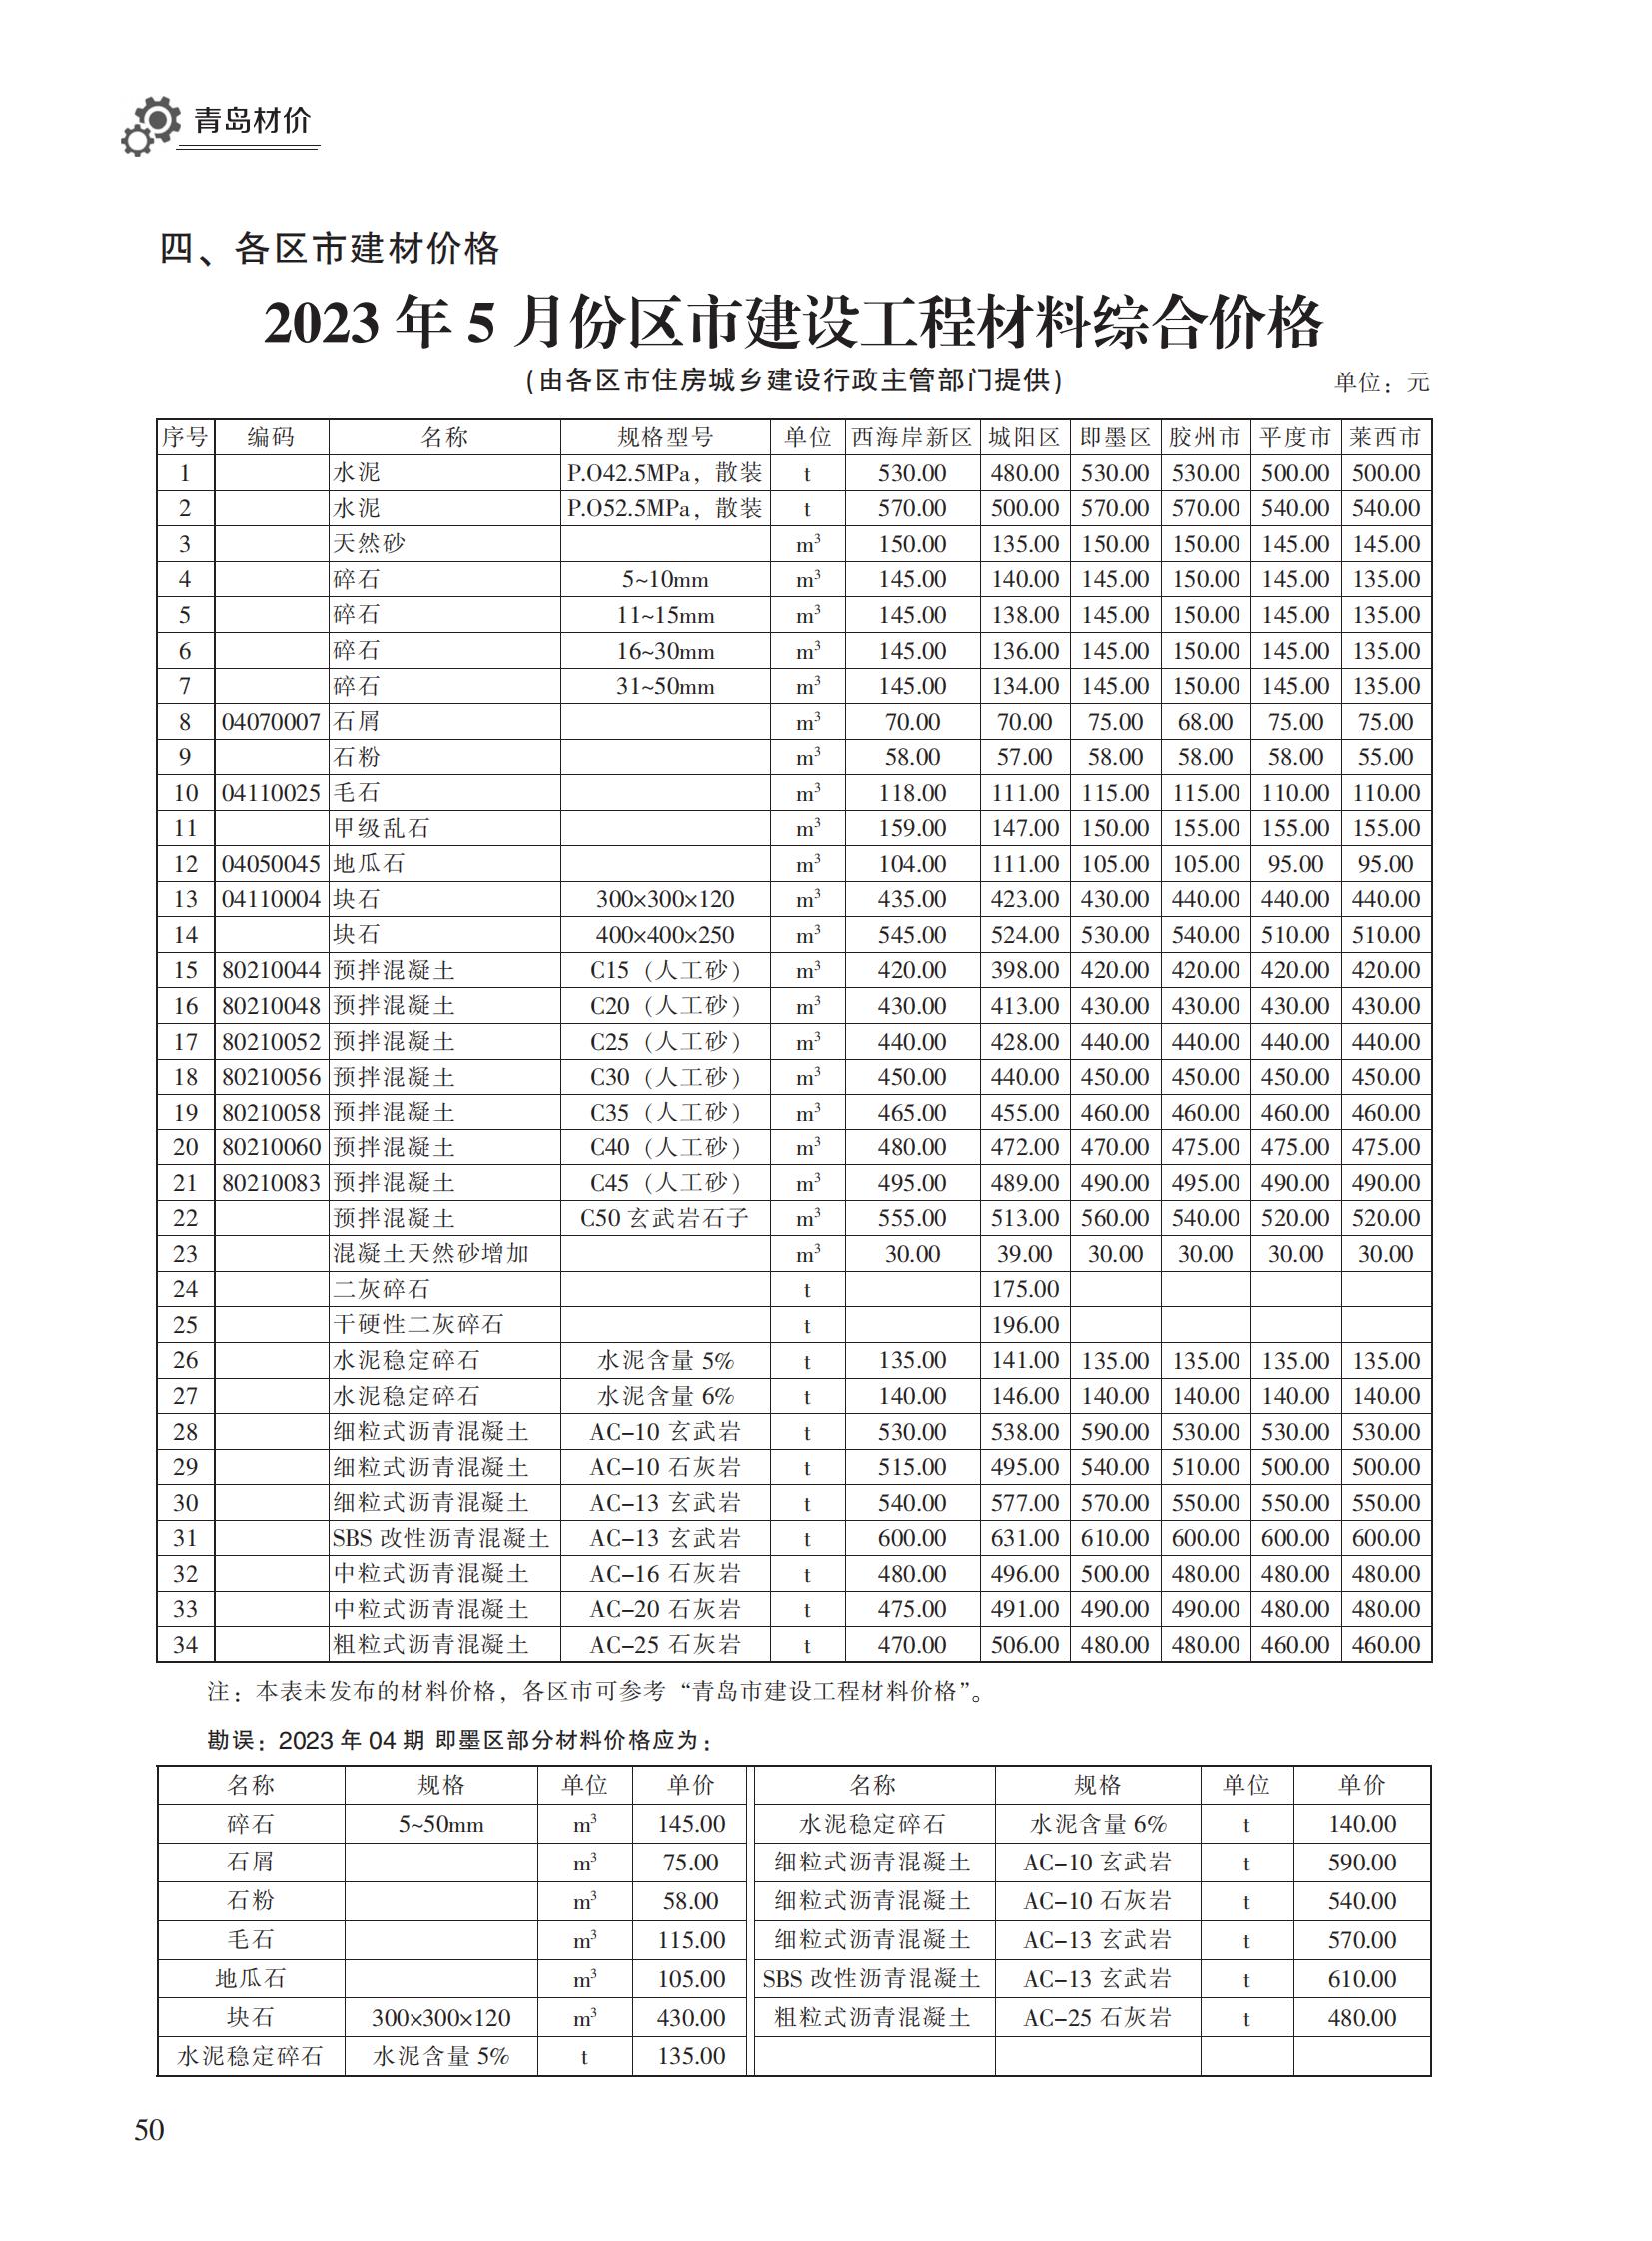 2023年5月青岛市建设工程材料价格及造价指数_49.jpg